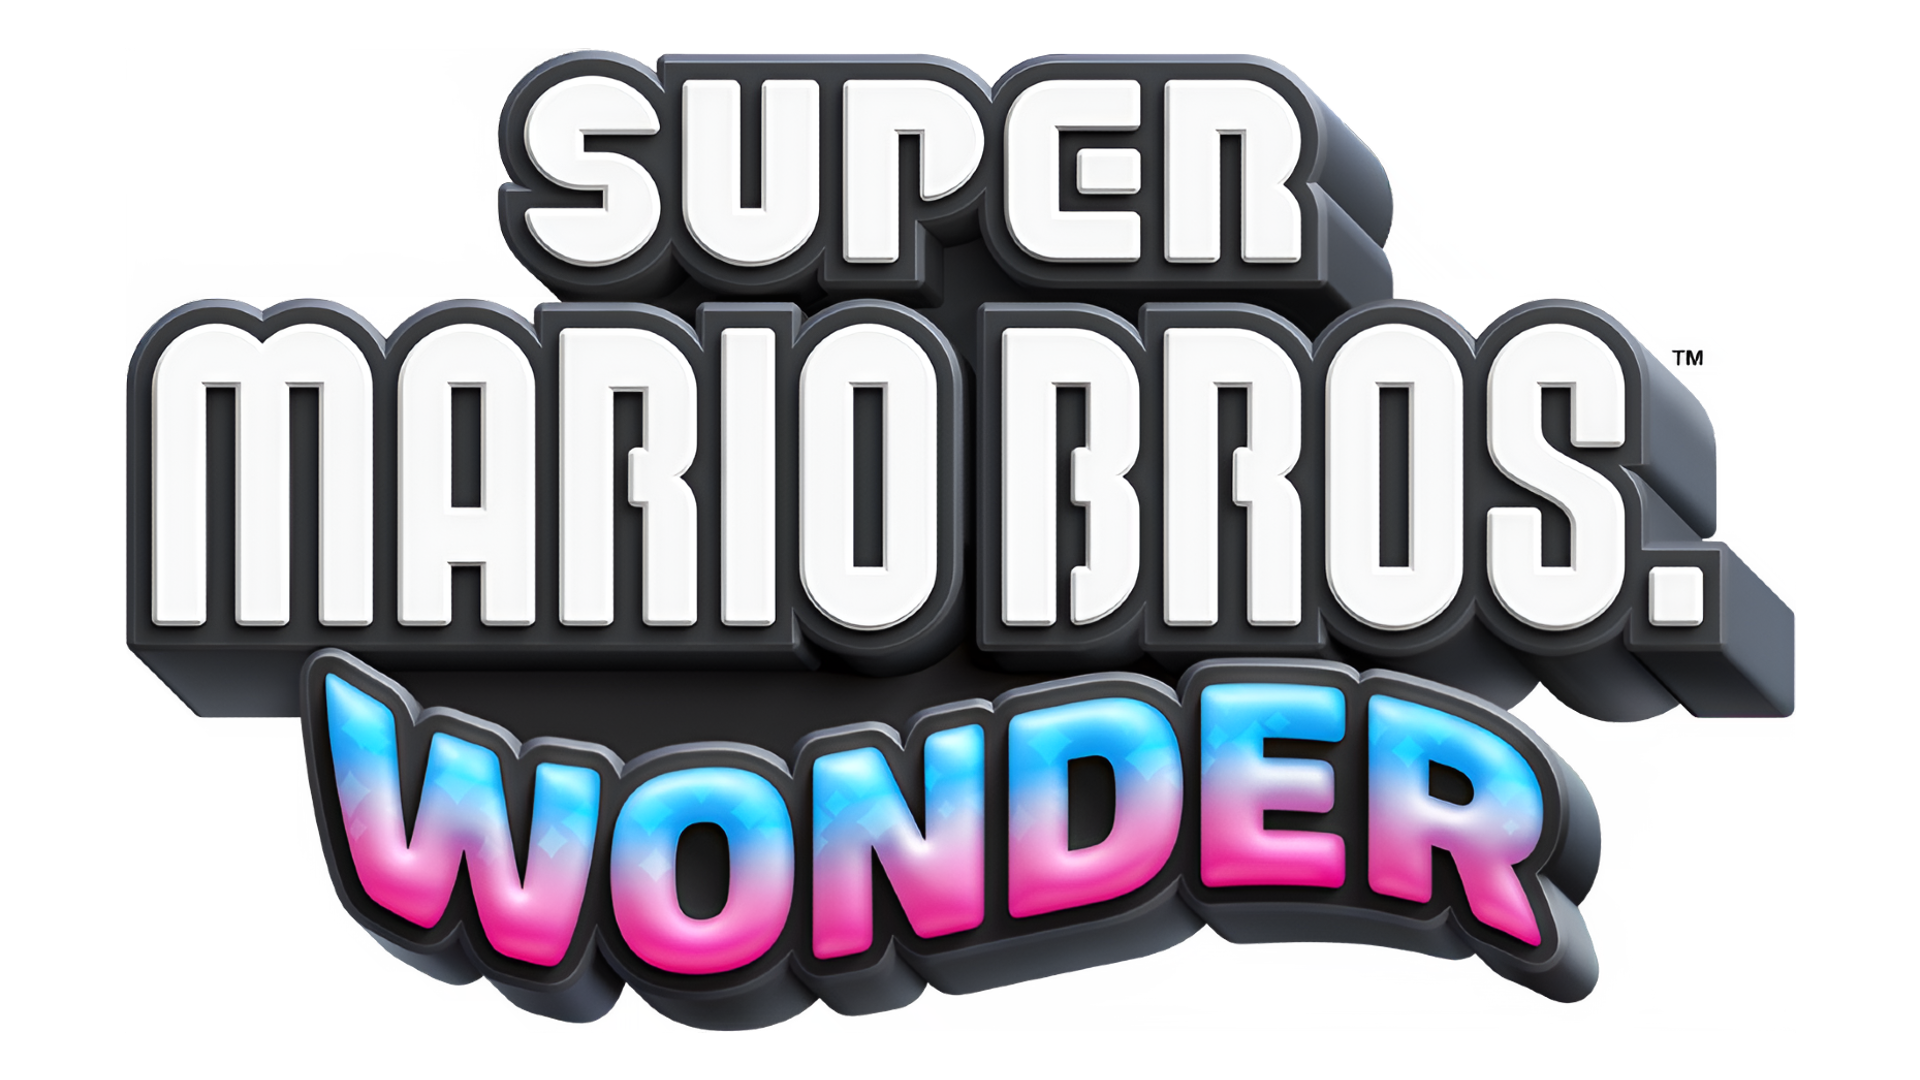 Super Mario Bros. Wonder Logo